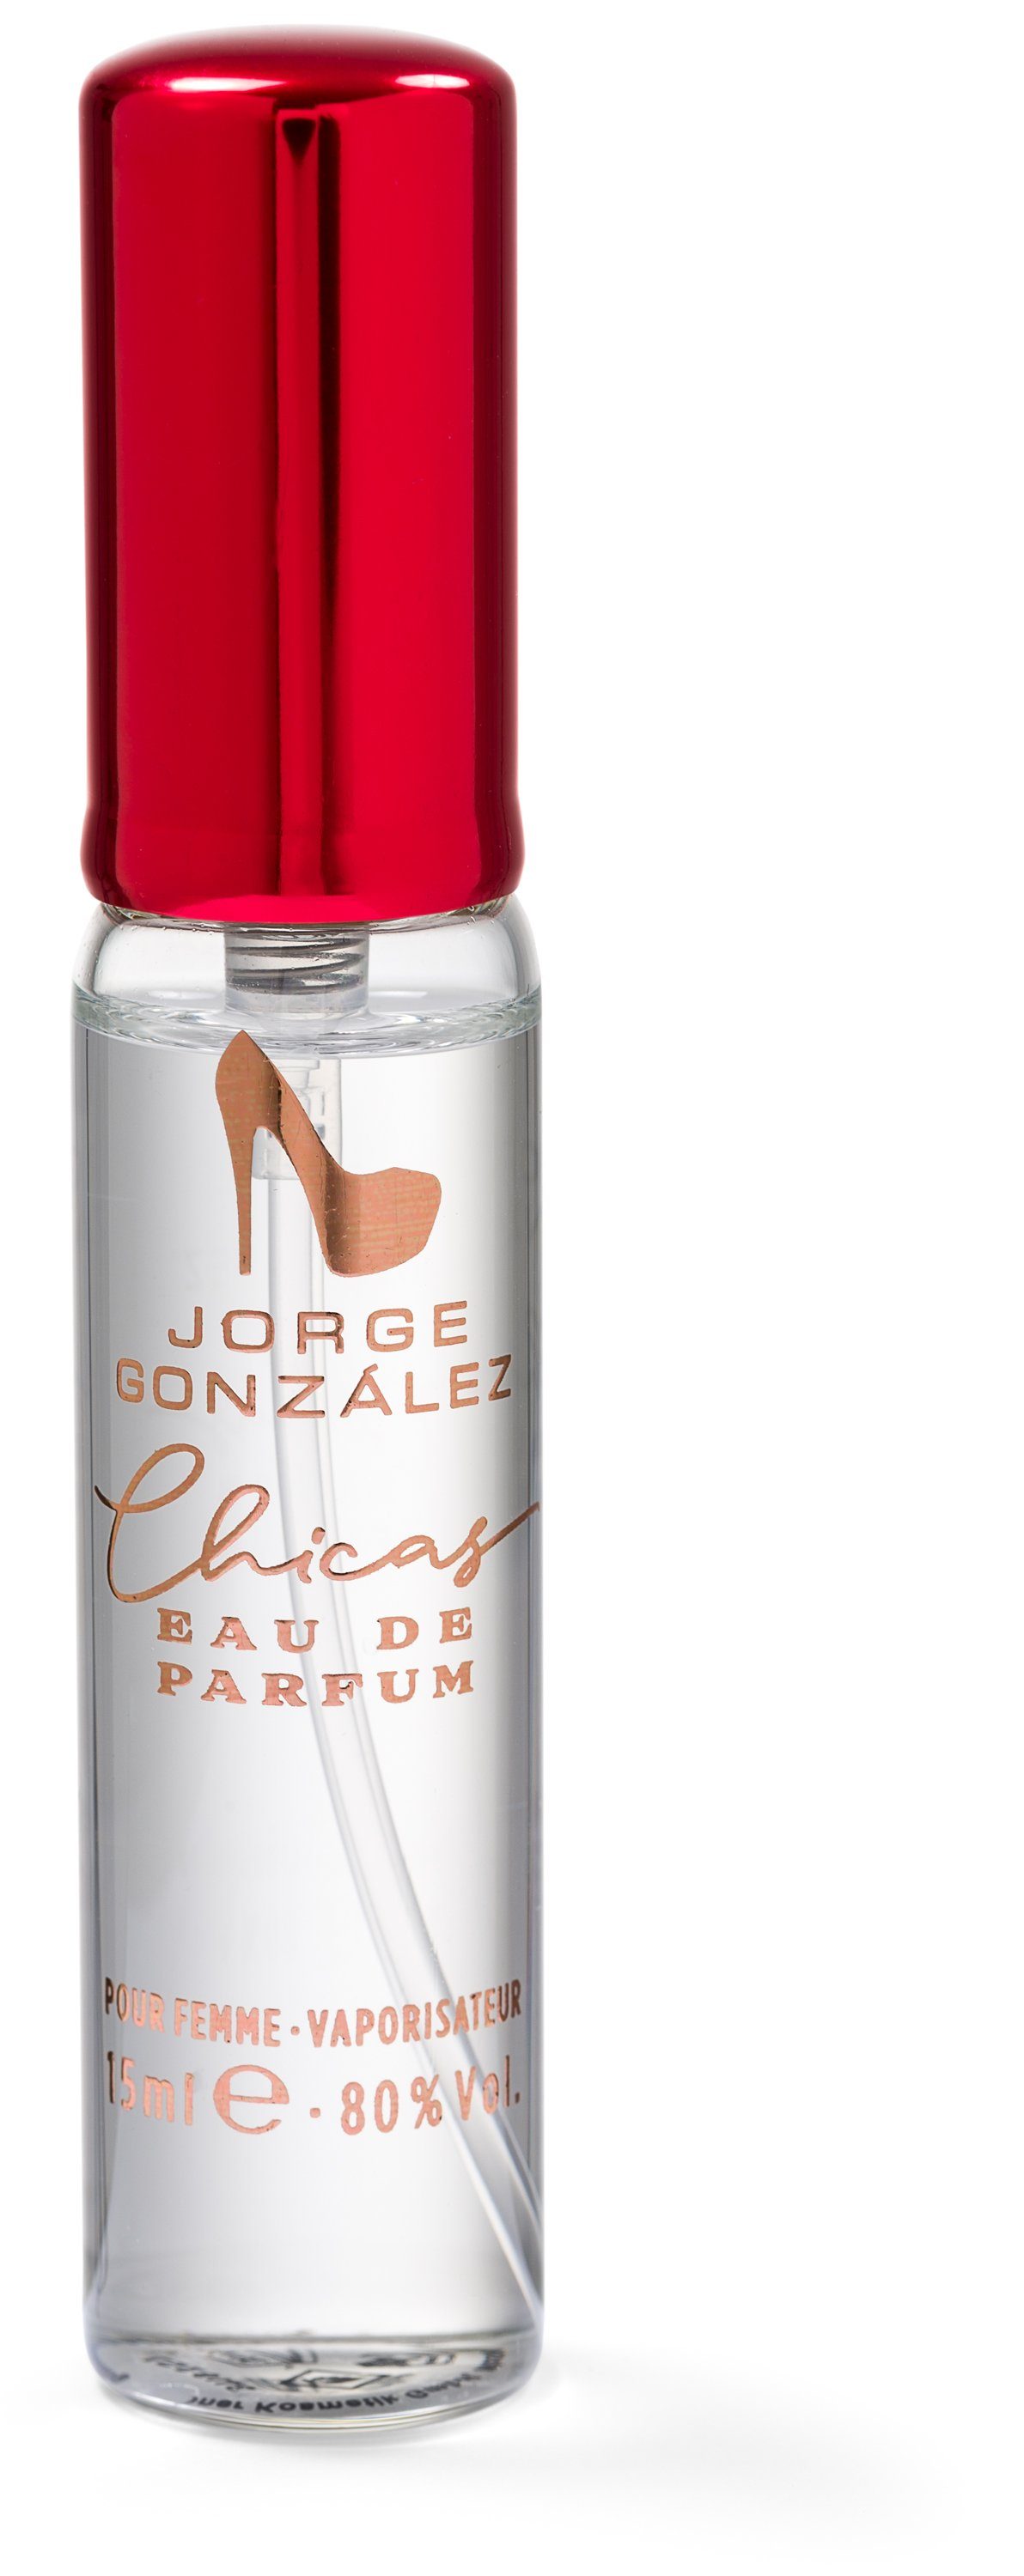 JORGE GONZÁLEZ Eau de Duft Parfum, EDICIÓN Eau 100+15ml, CHICAS de Parfum für Frauen Damenduft